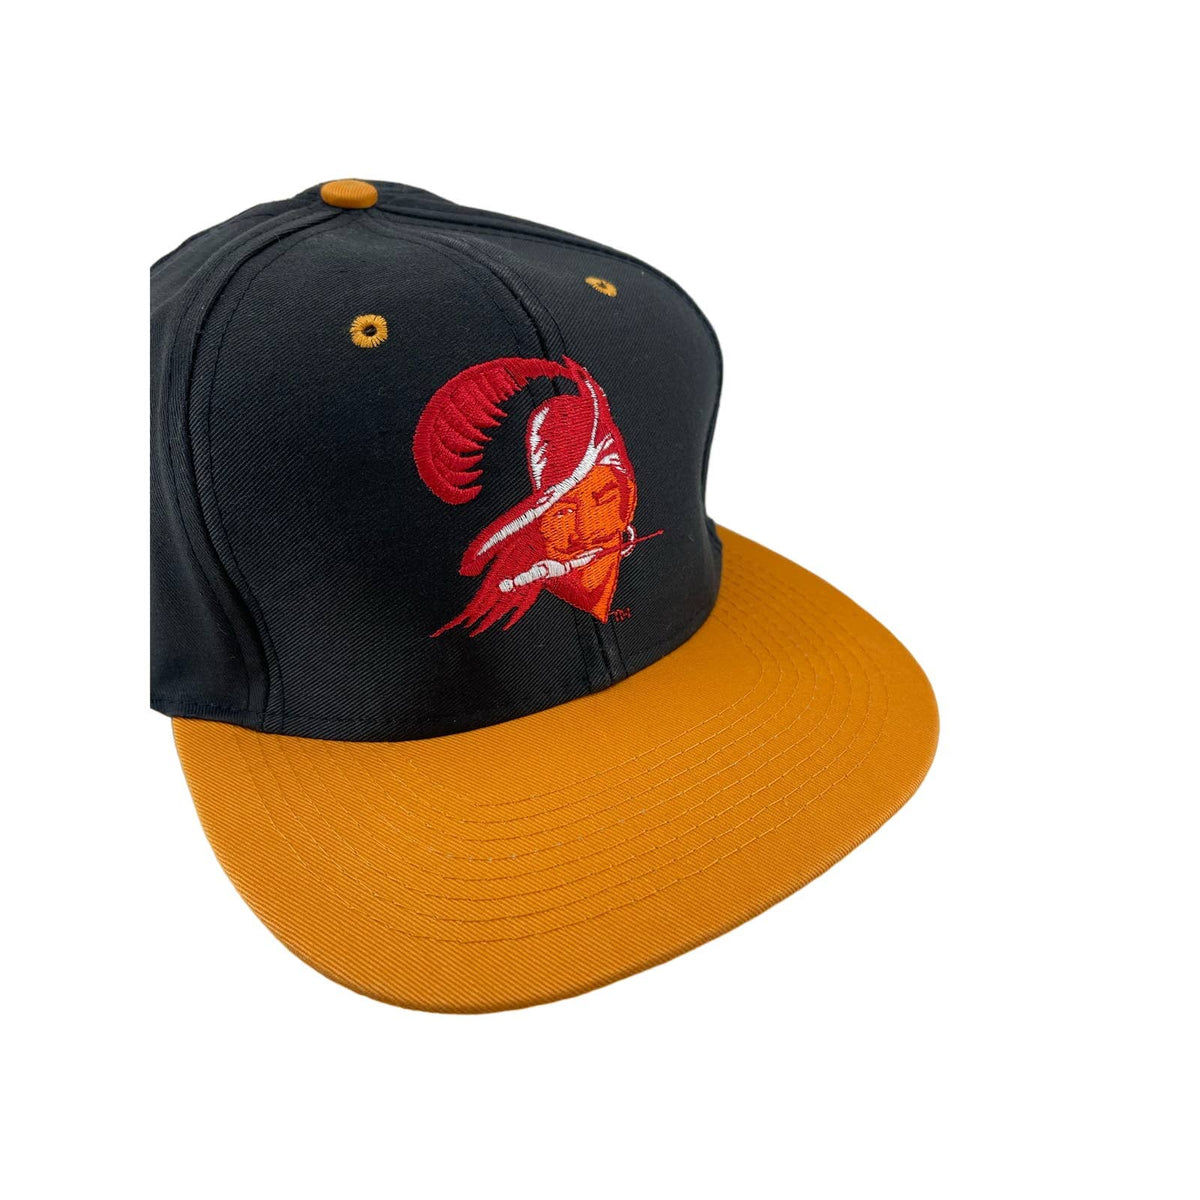 Vintage 1990's Tampa Bay Buccaneers Logo 7 Snapback Hat